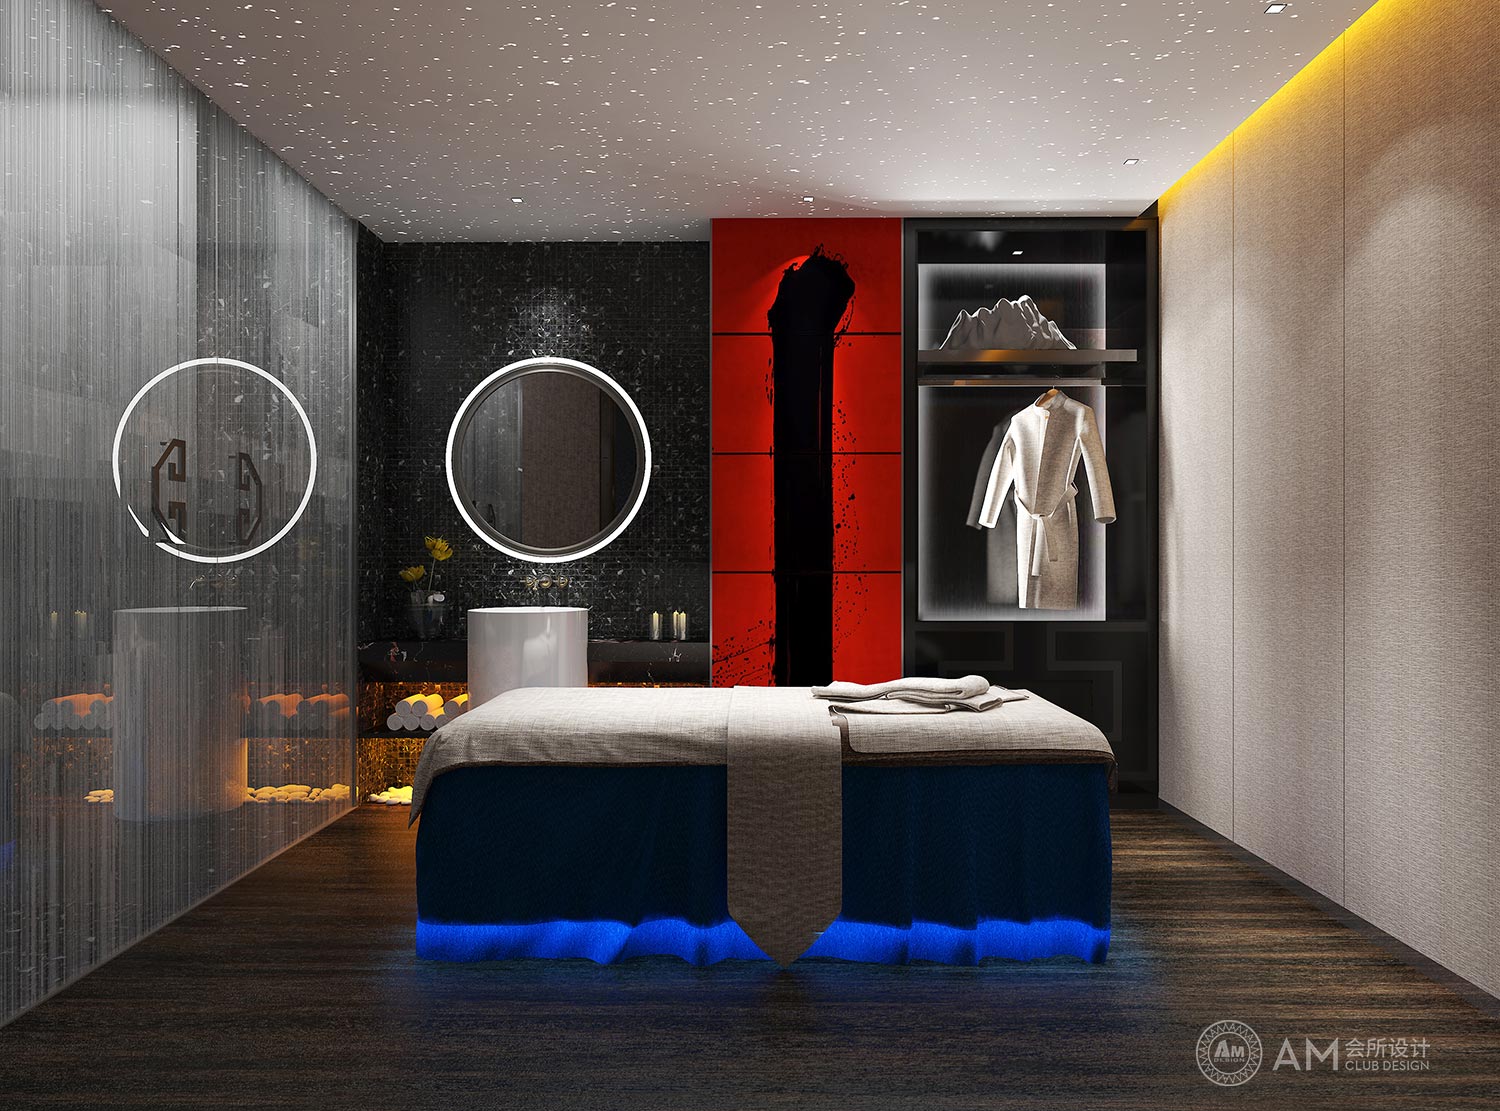 AM DESIGN | Spa room design of Top Spa Club in Joy City